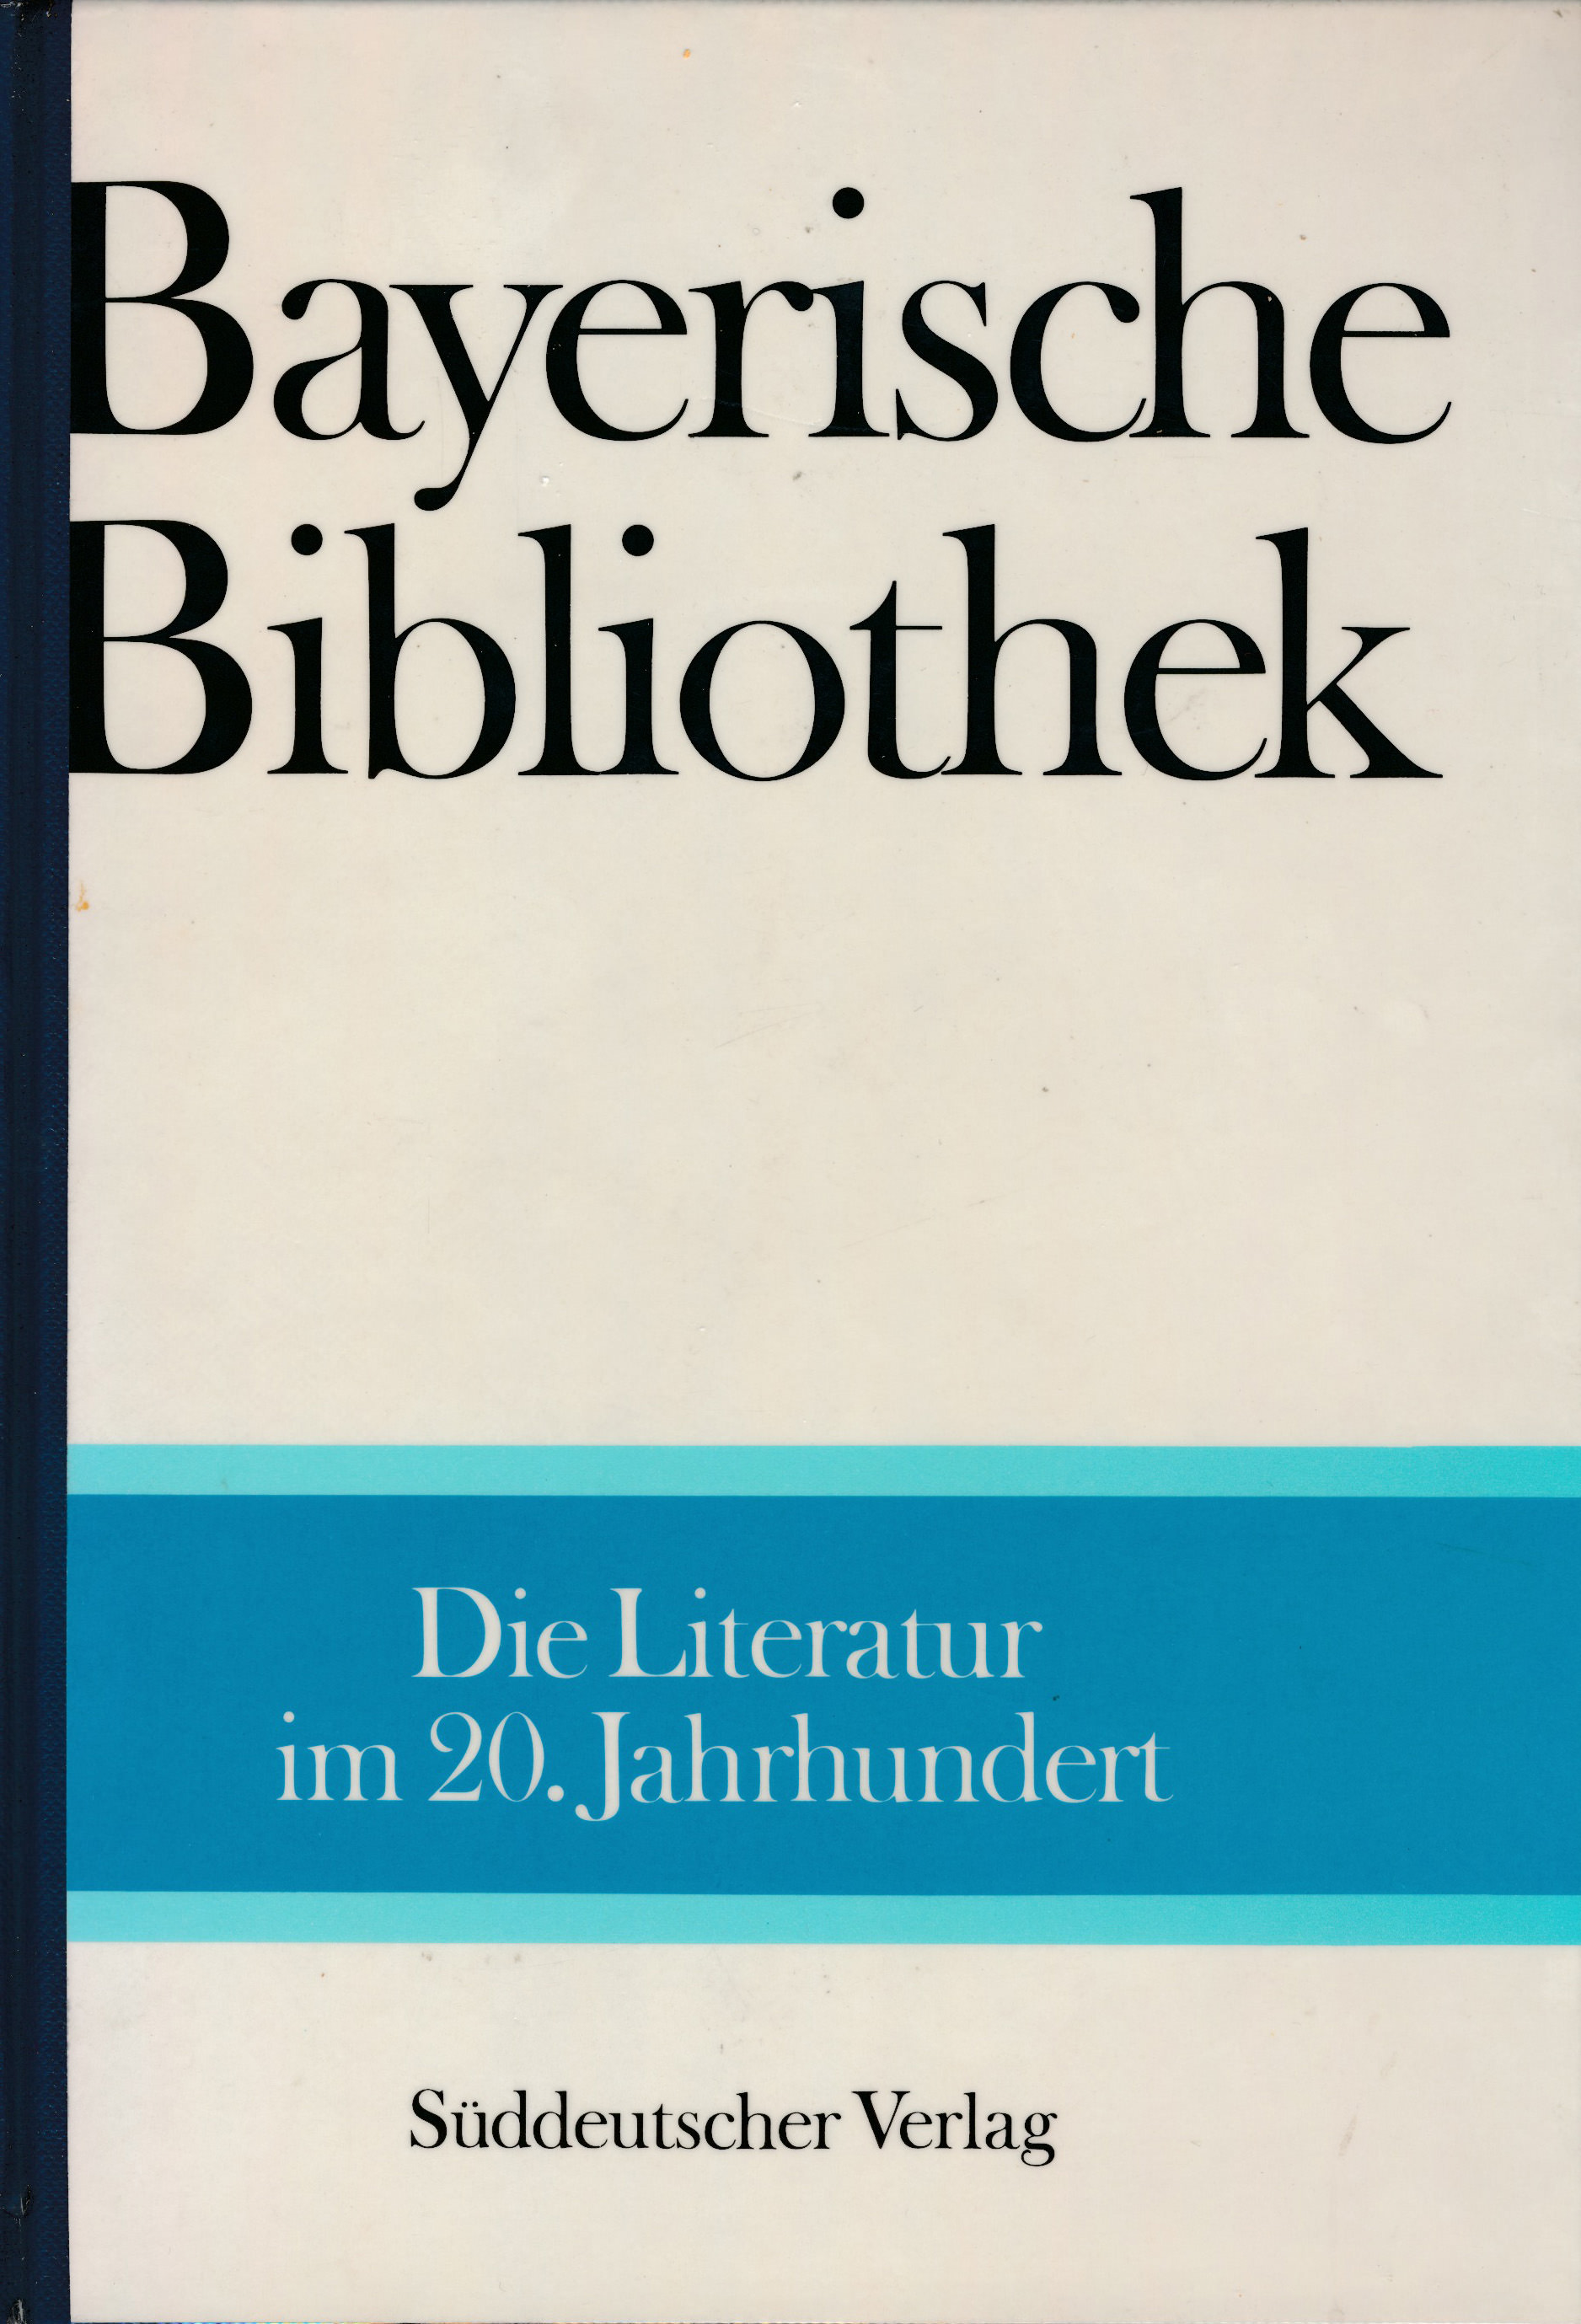  - Die Literatur im 20. Jahrhundert. Bayerische Bibliothek